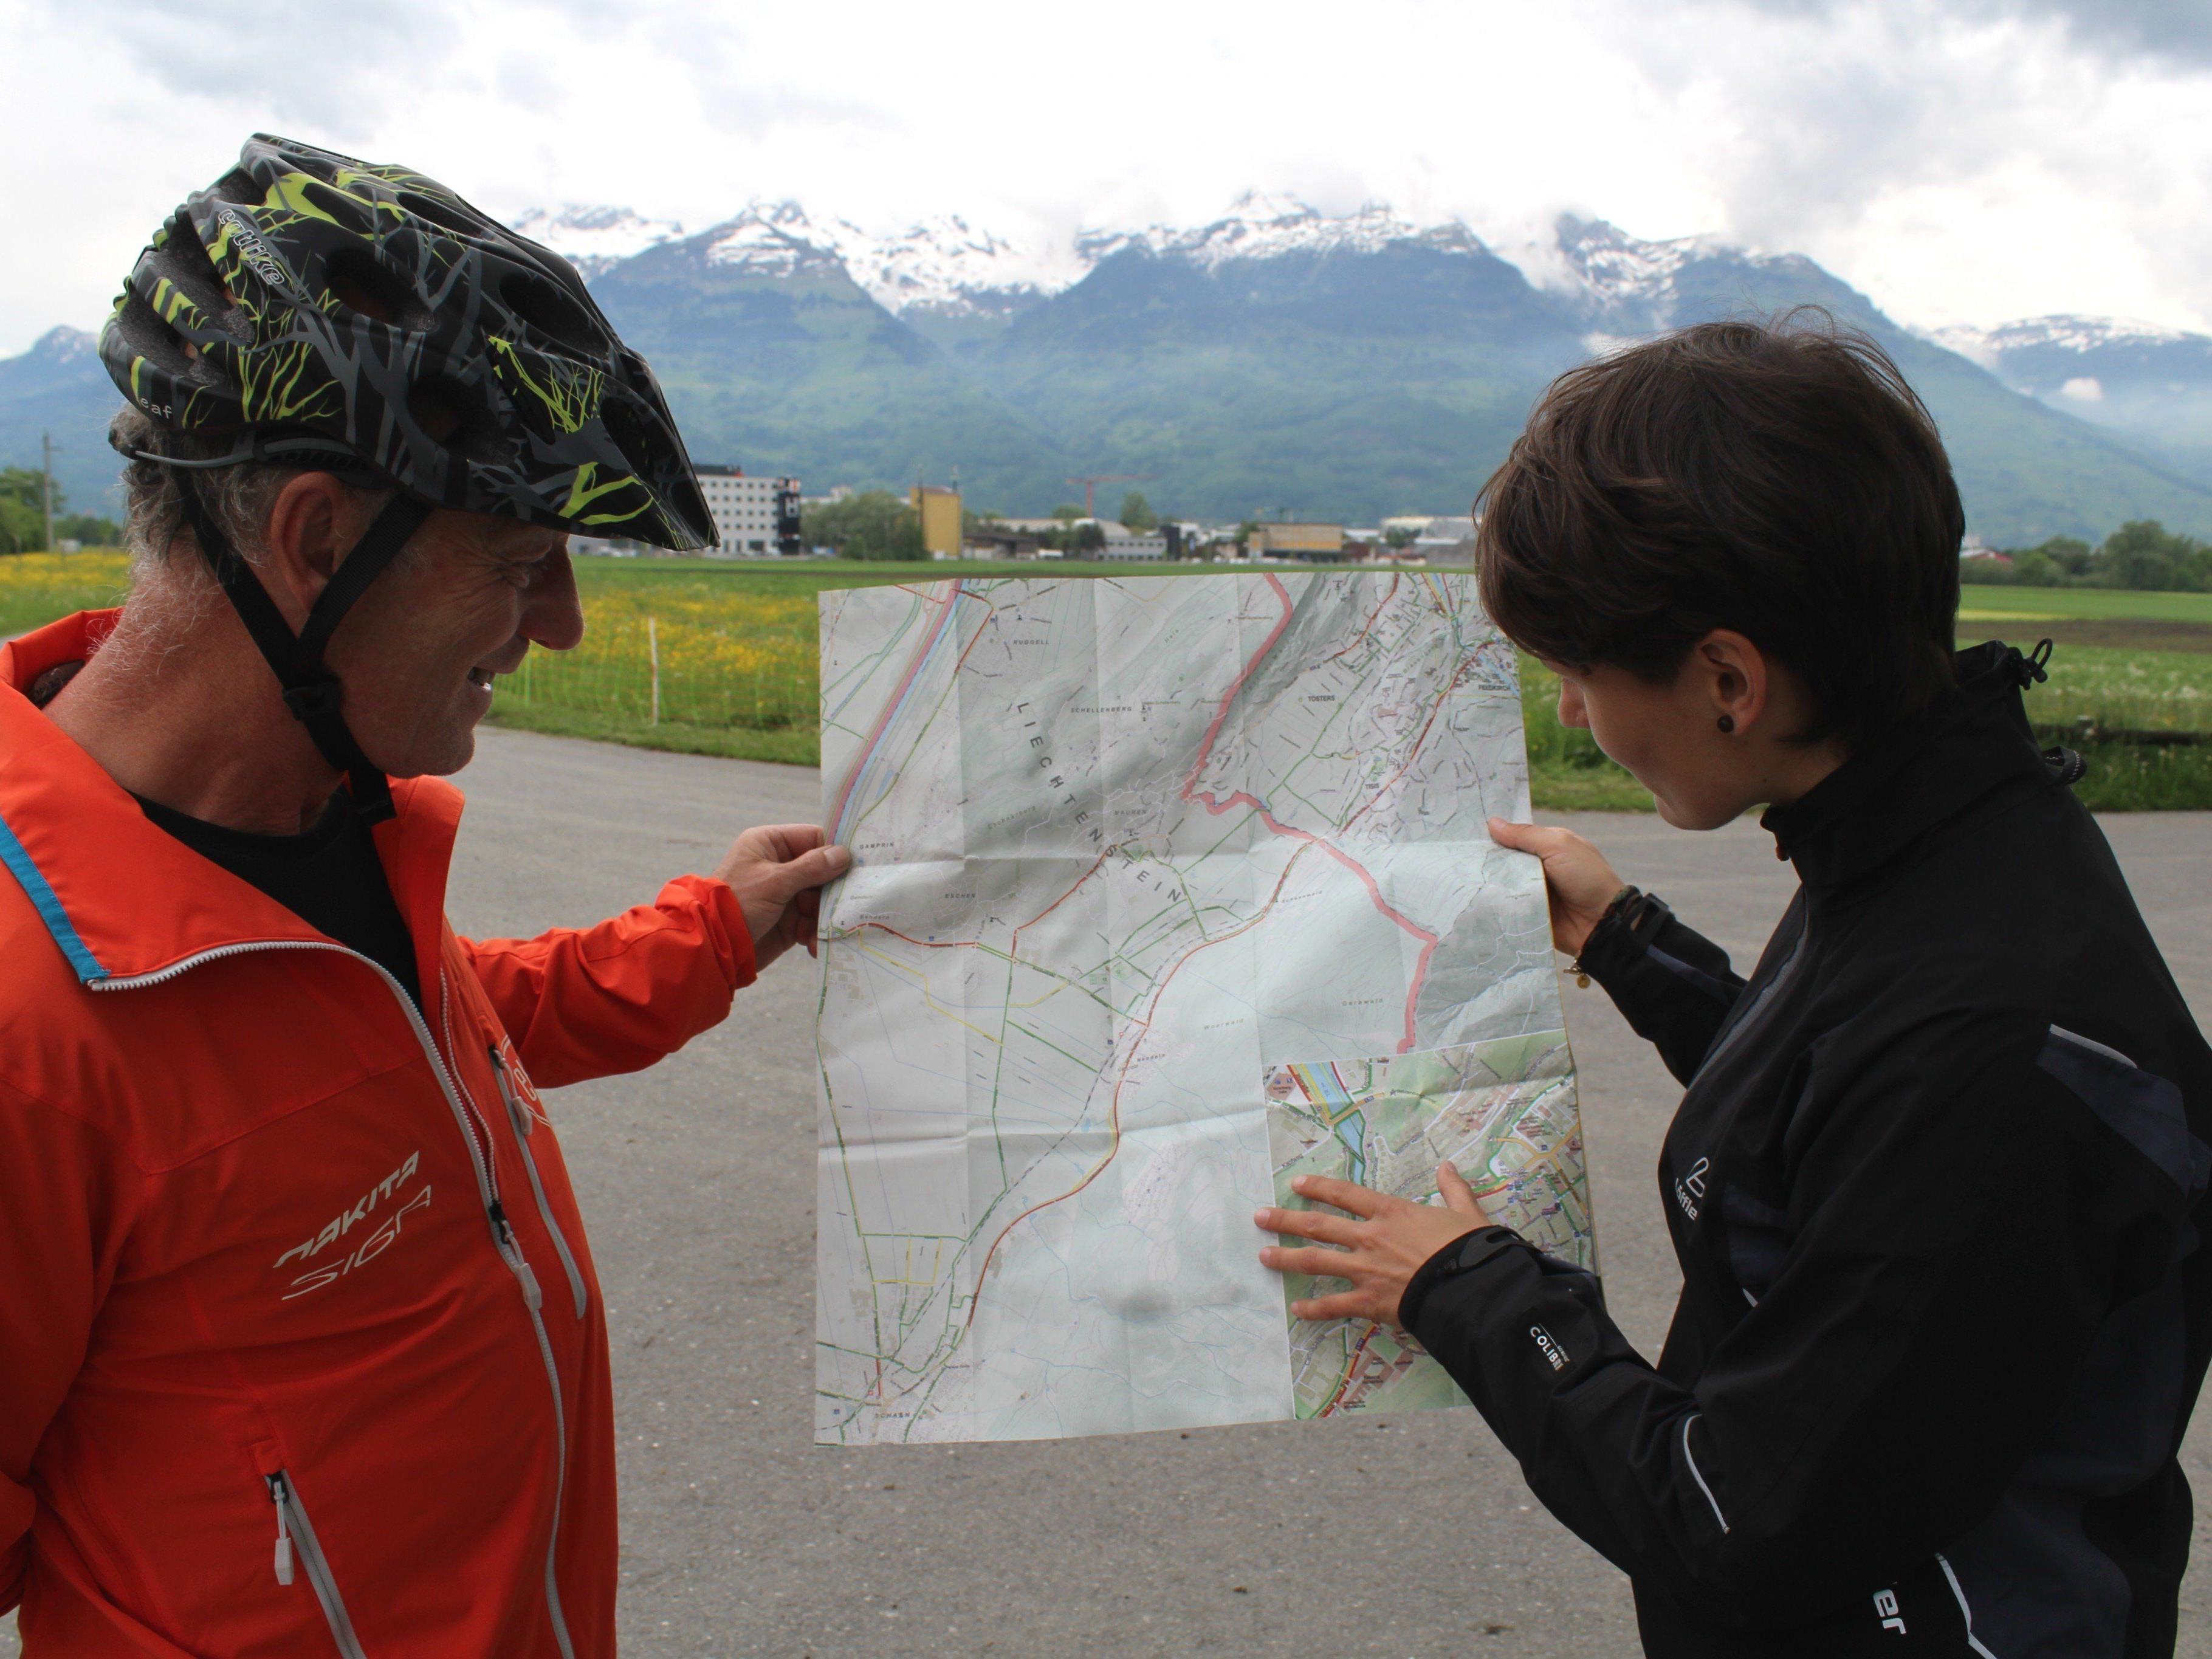 Fahrrad-Beauftragte Elisabeth Mair gab Tipps zu Pendlerrouten nach Liechtenstein.